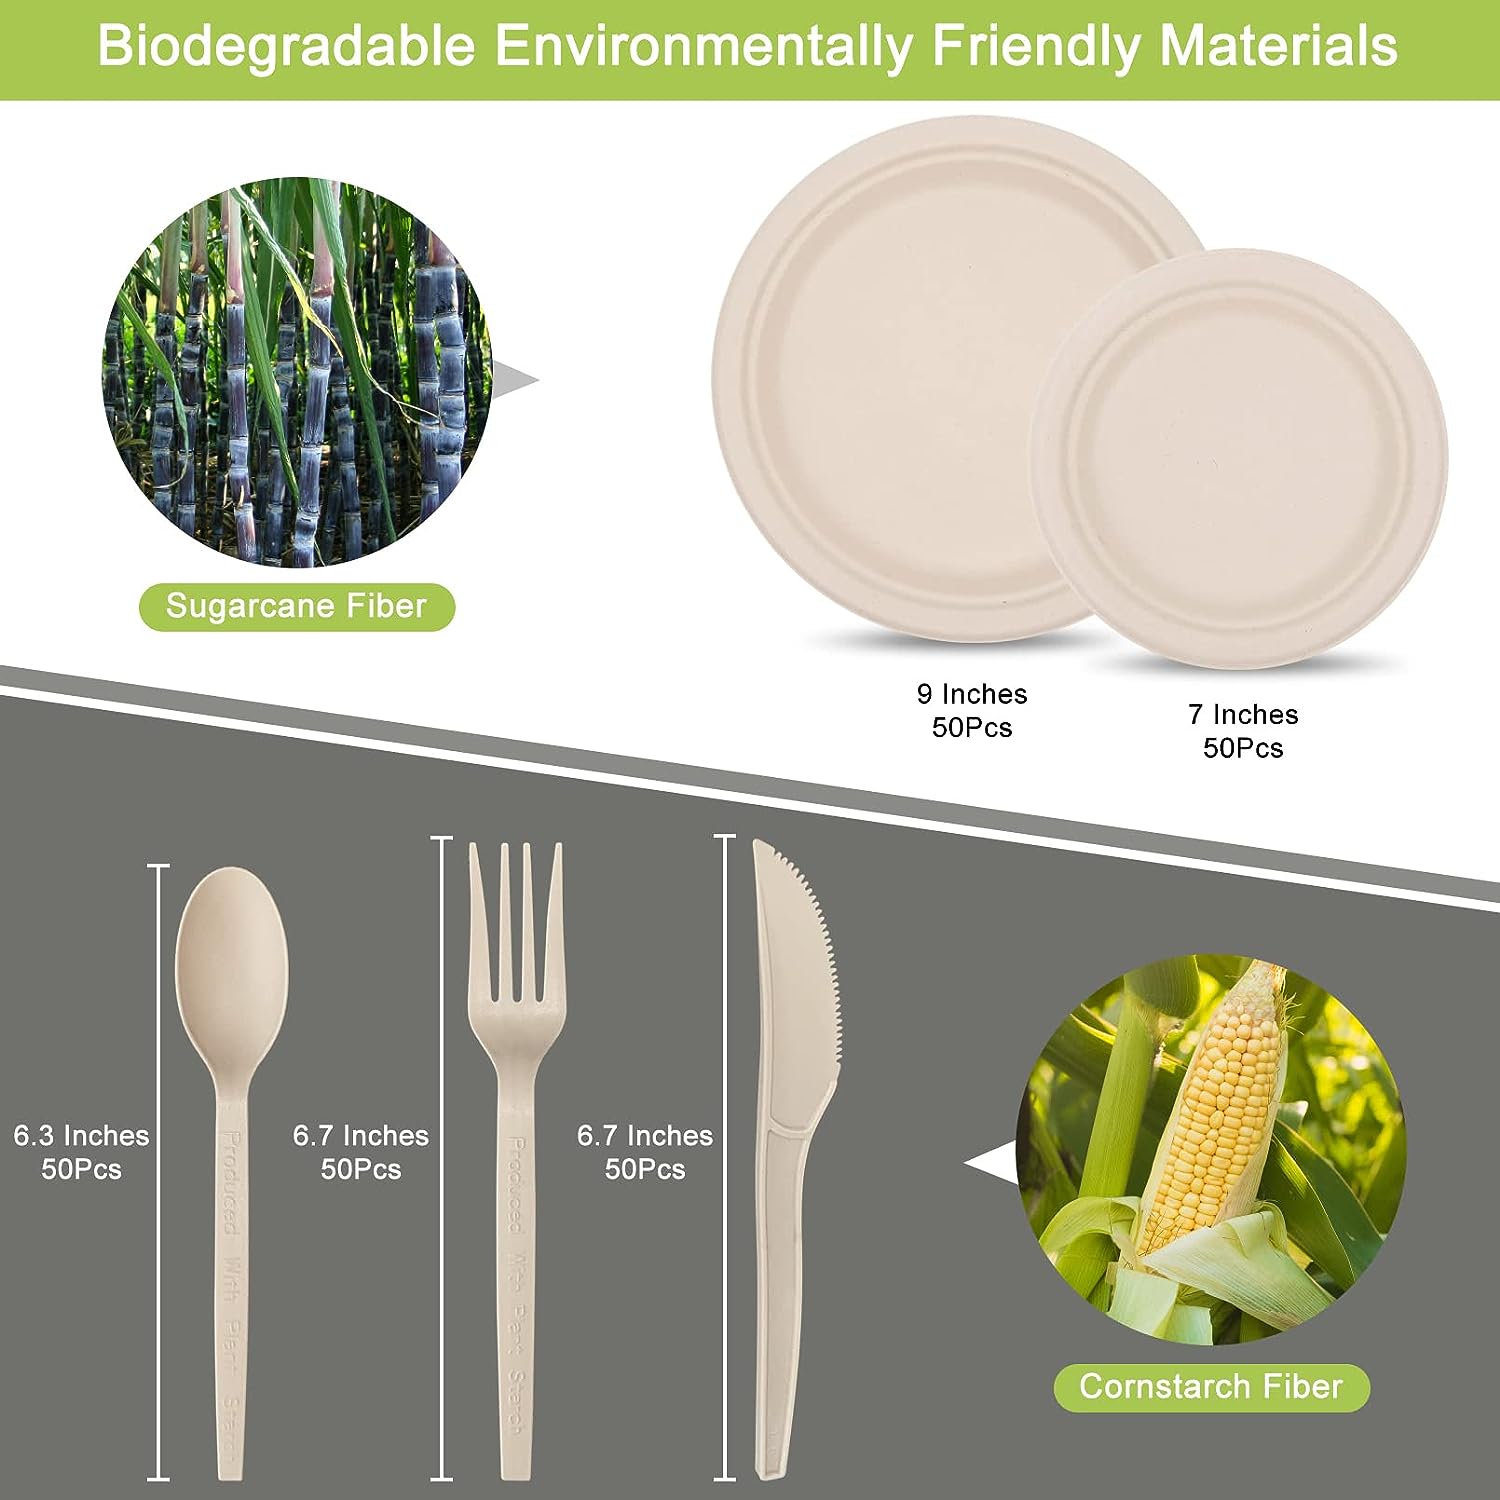 250 Piece Compostable Paper Plates Set Review - Shop Biodegradables